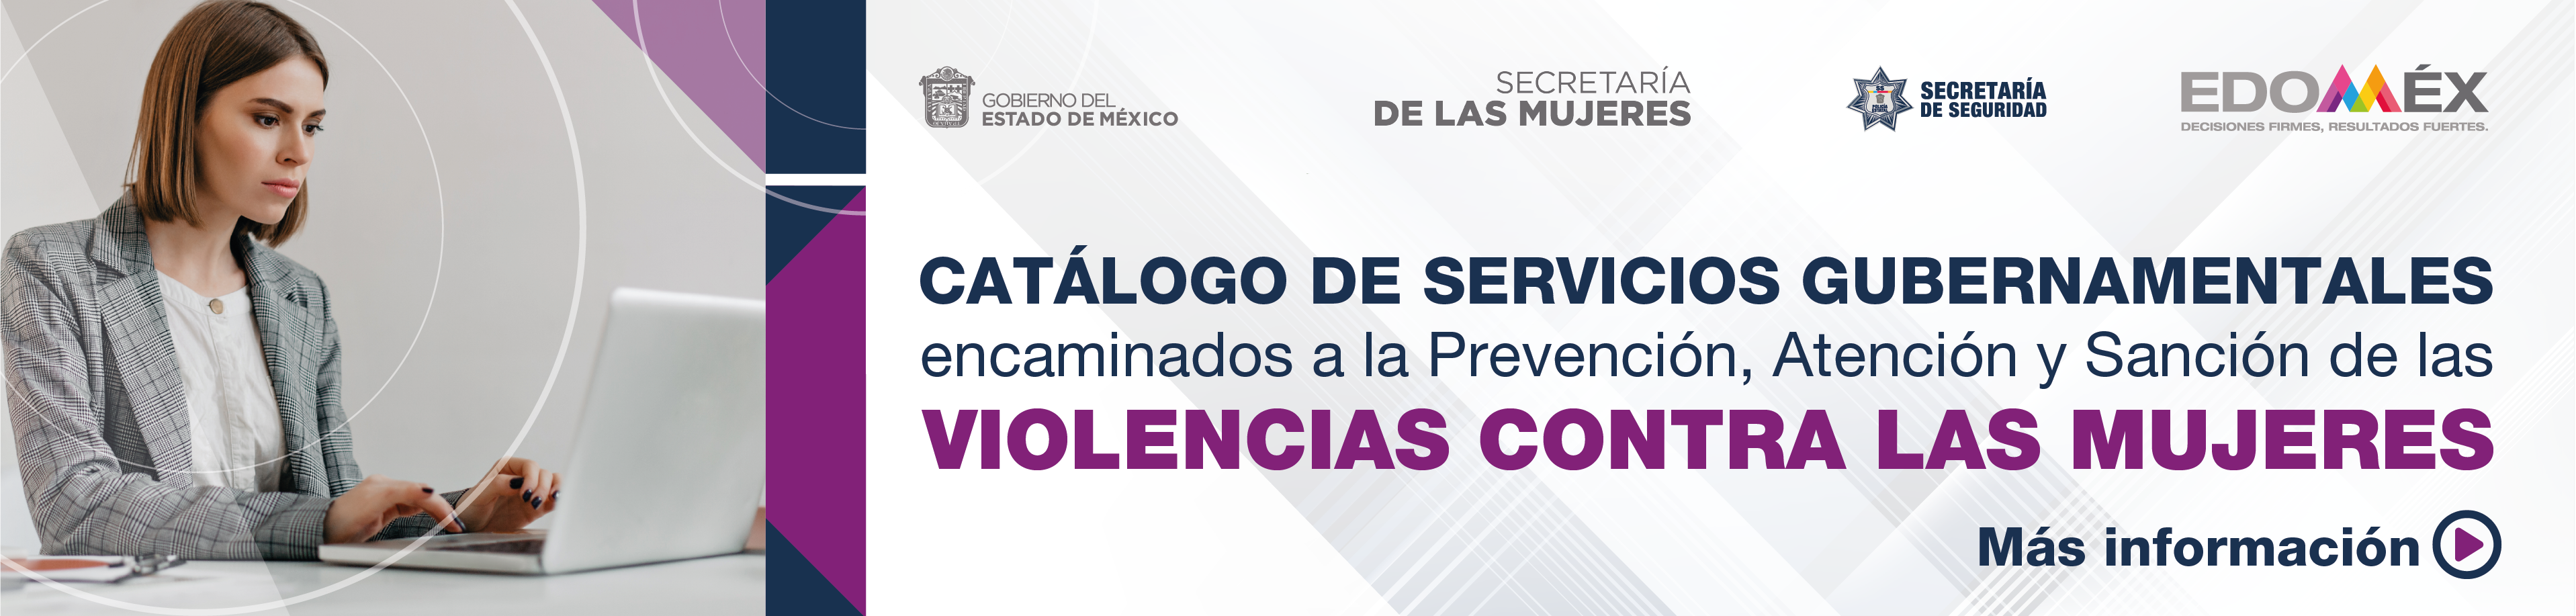 Catálogo de Servicios Gubernamentales - Violencia Contra las Mujeres